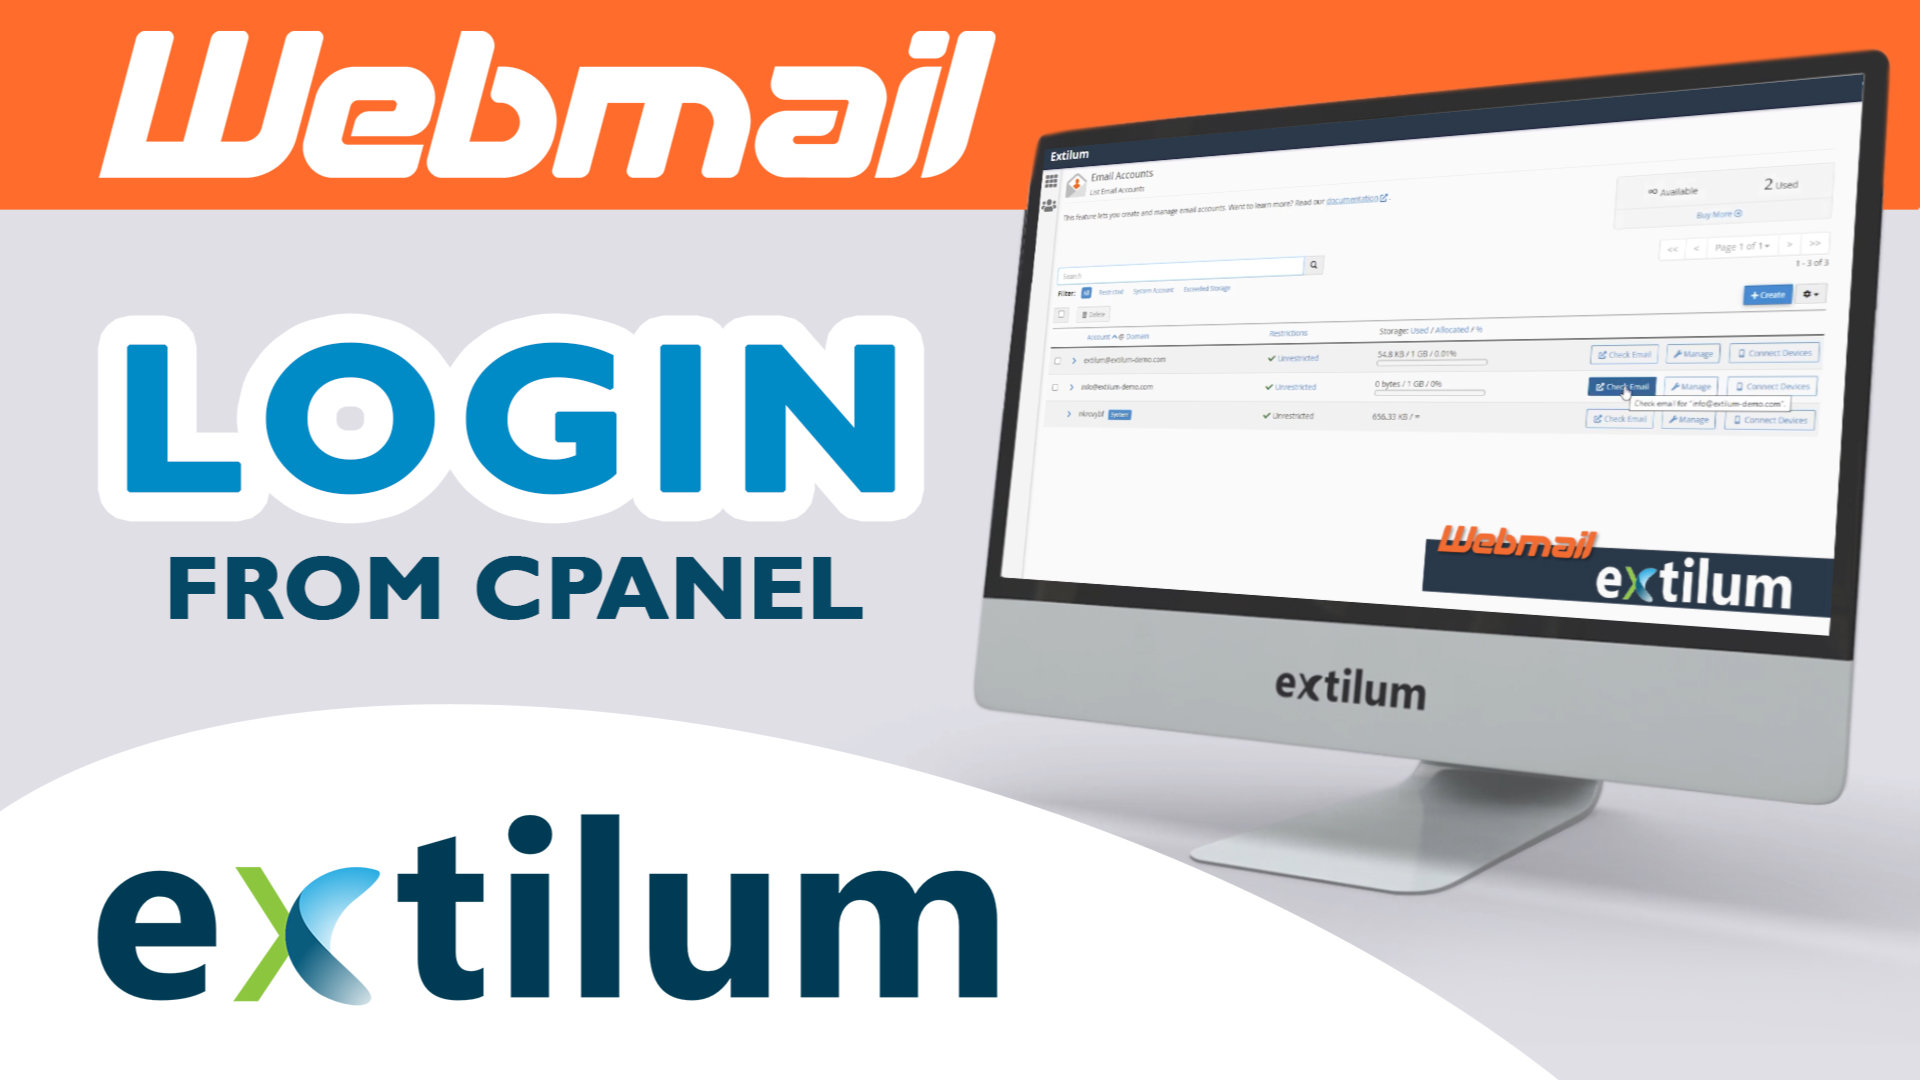 Extilum Webmail - Login from Cpanel